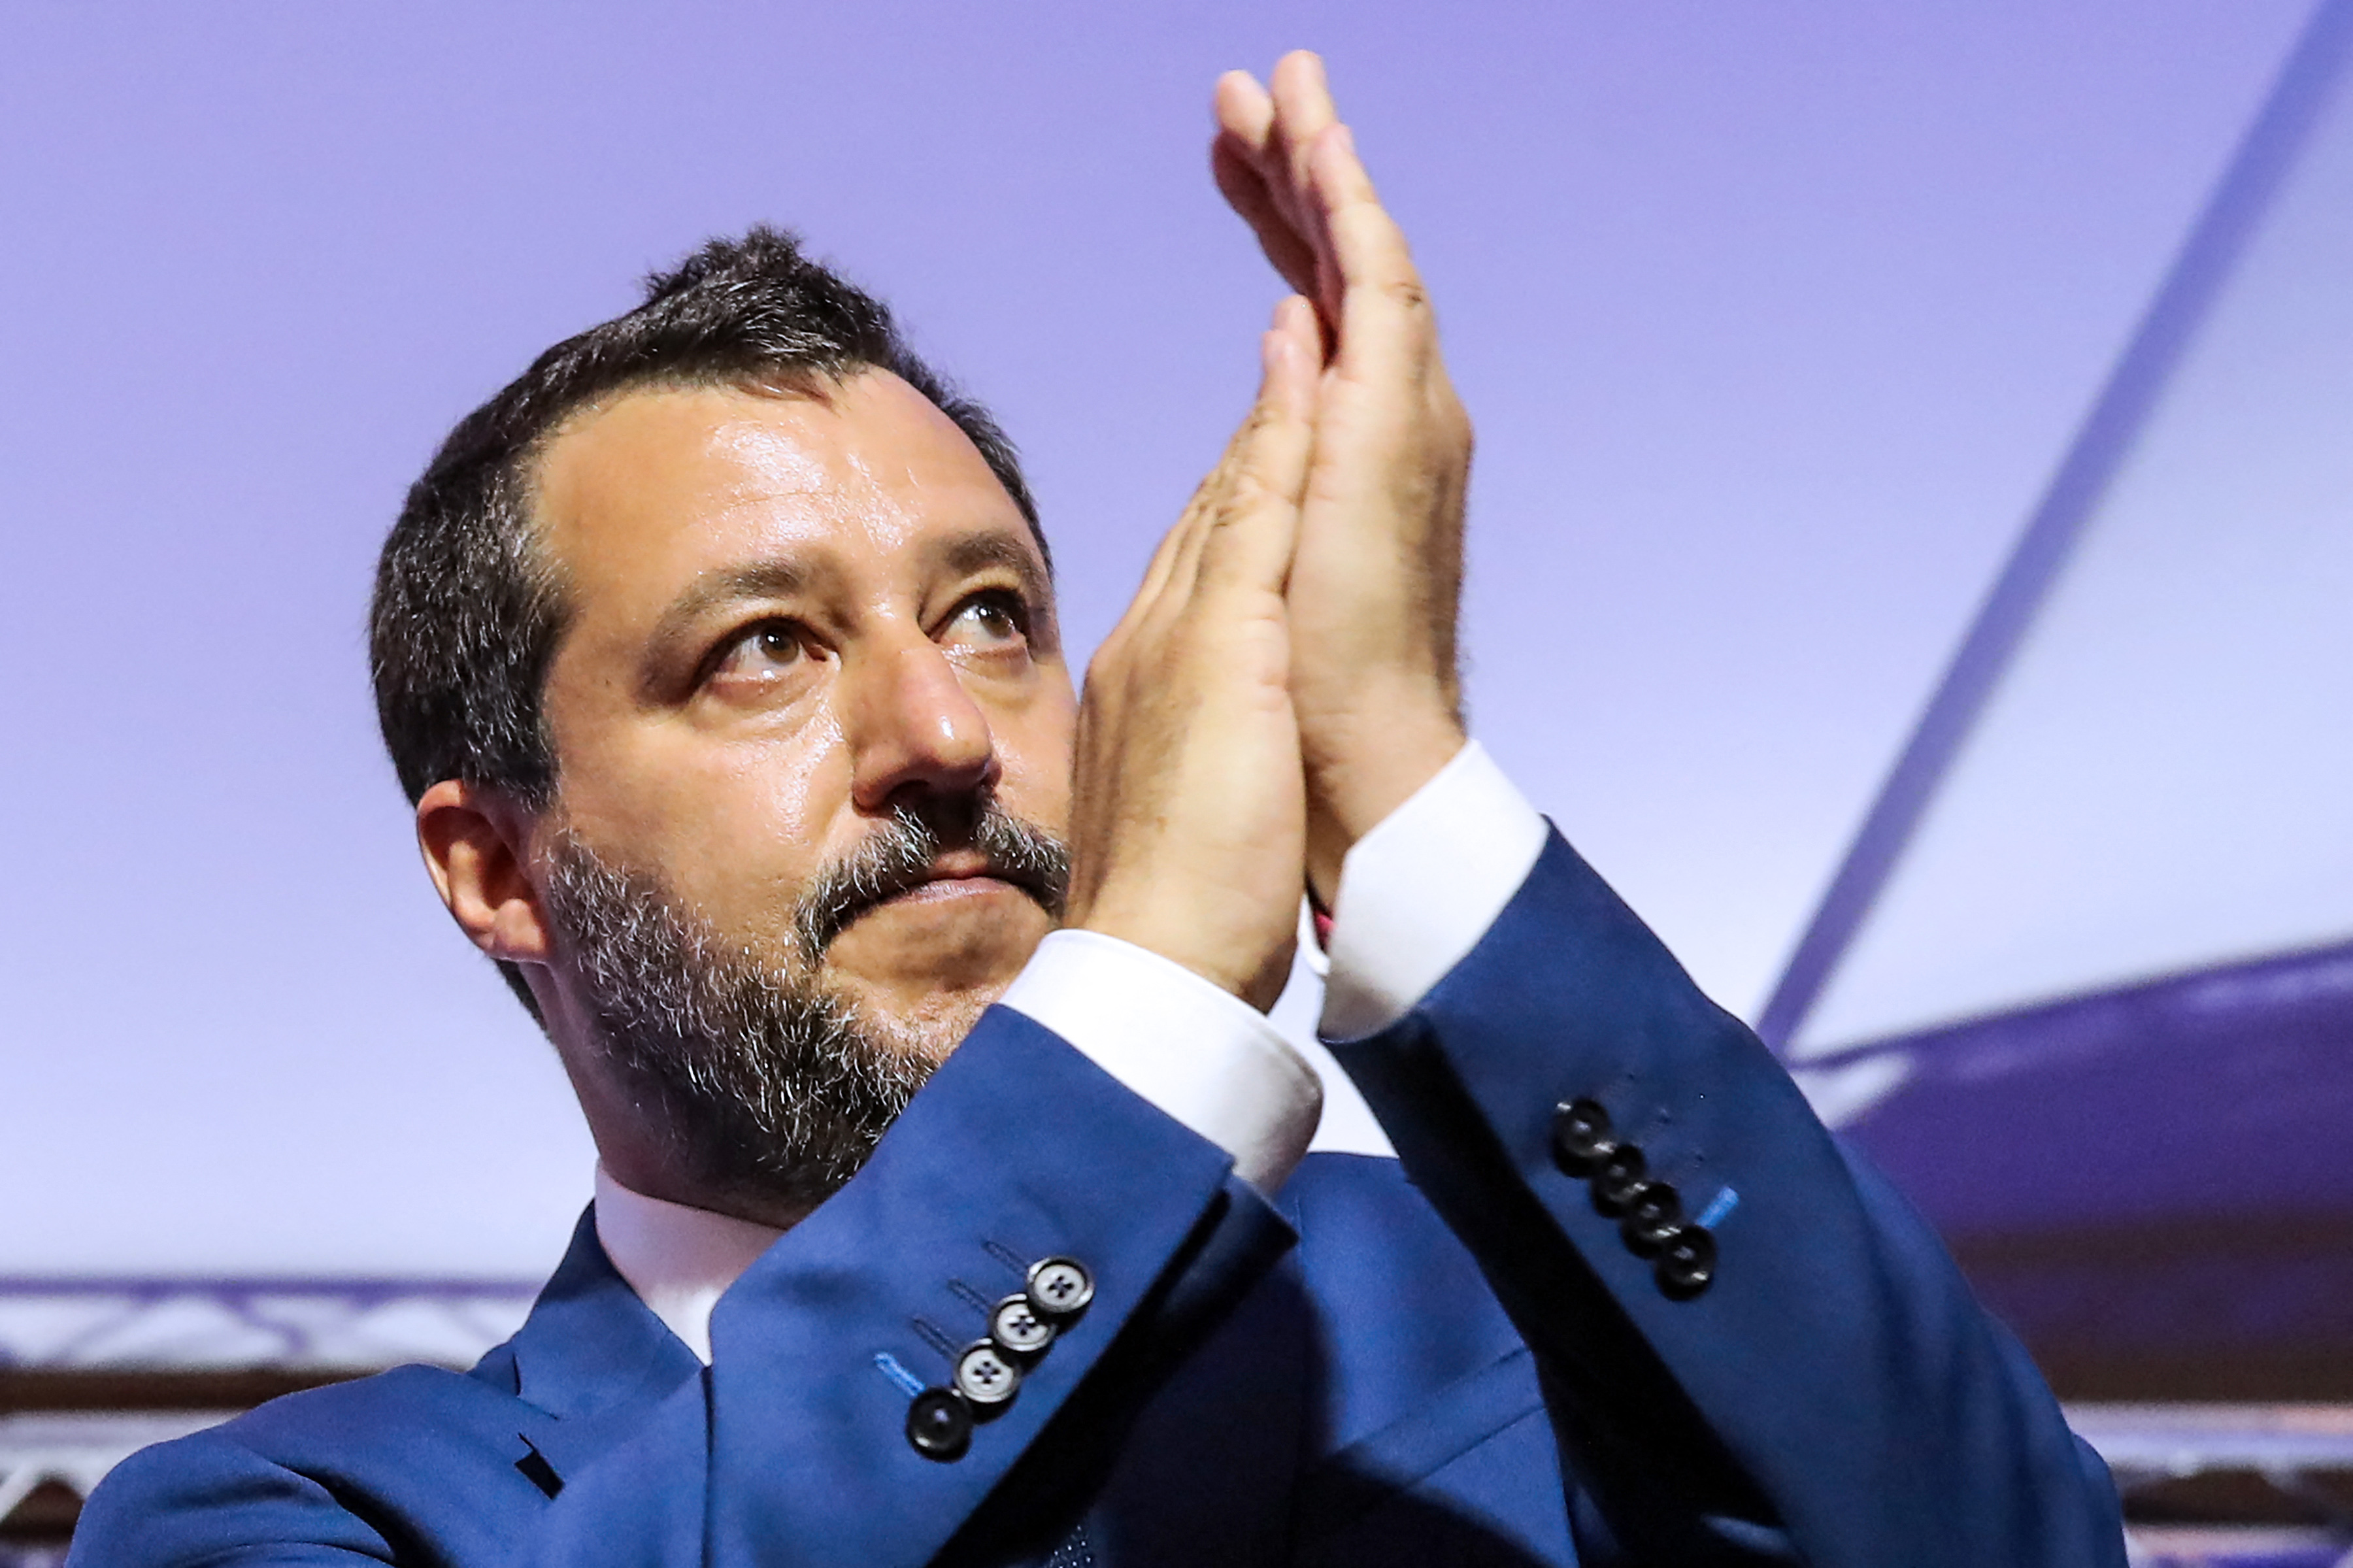 Elkezdődött Matteo Salvini pere, aki nem engedte kikötni a bevándorlók hajóit az olasz kikötőkben